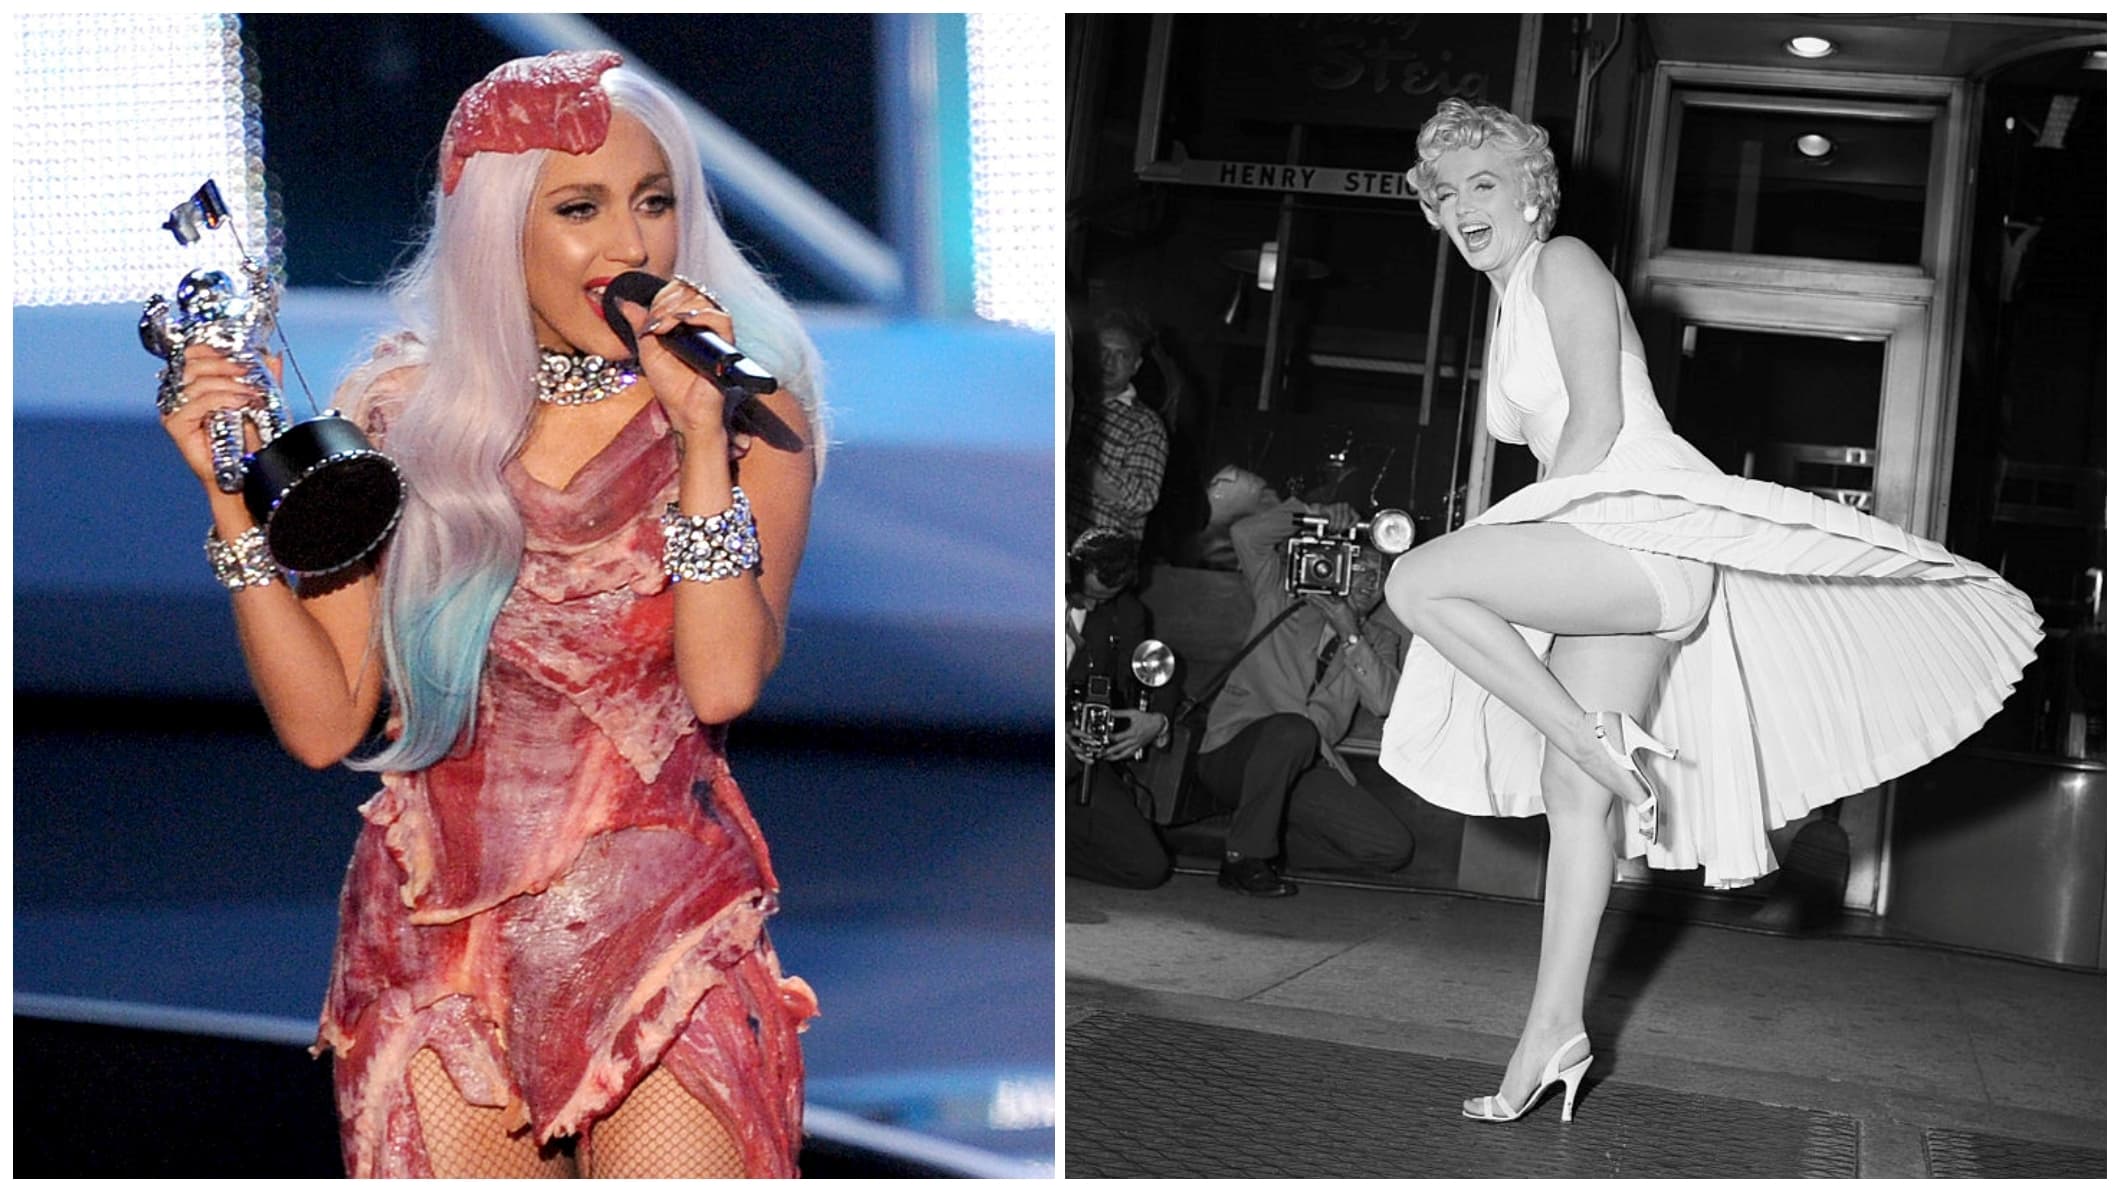 Lady Gaga húsruhája, Marilyn Monroe legendás fehér szoknyája – emlékezetes ruhák saját Wikipédia-oldallal